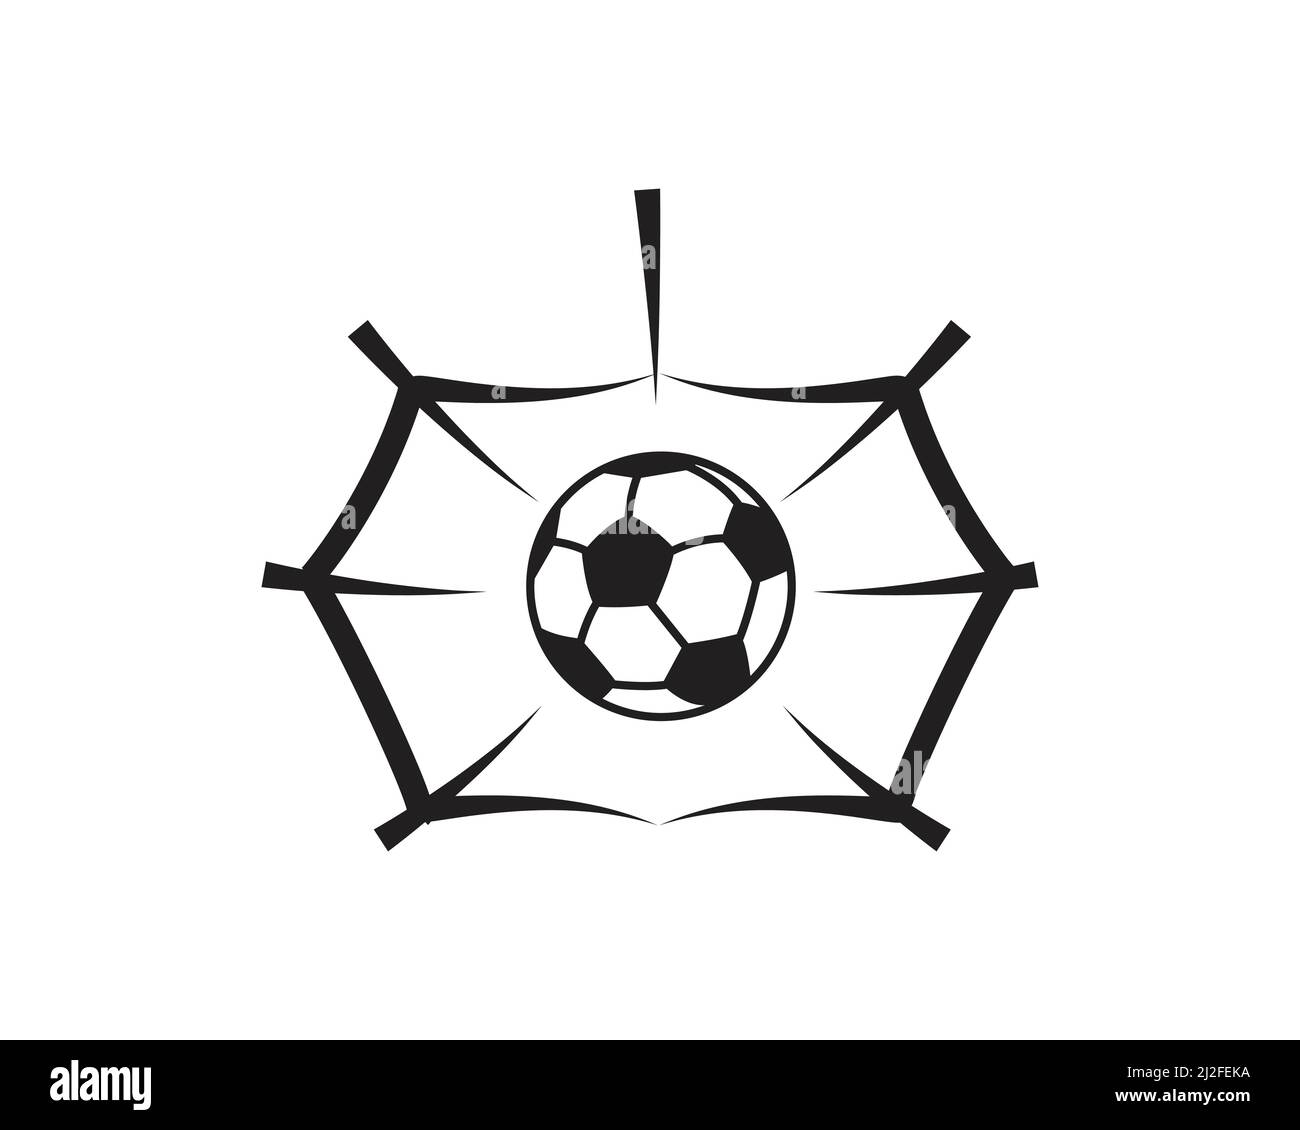 Football Net With Soccer Balls 2059423 Vector Art at Vecteezy